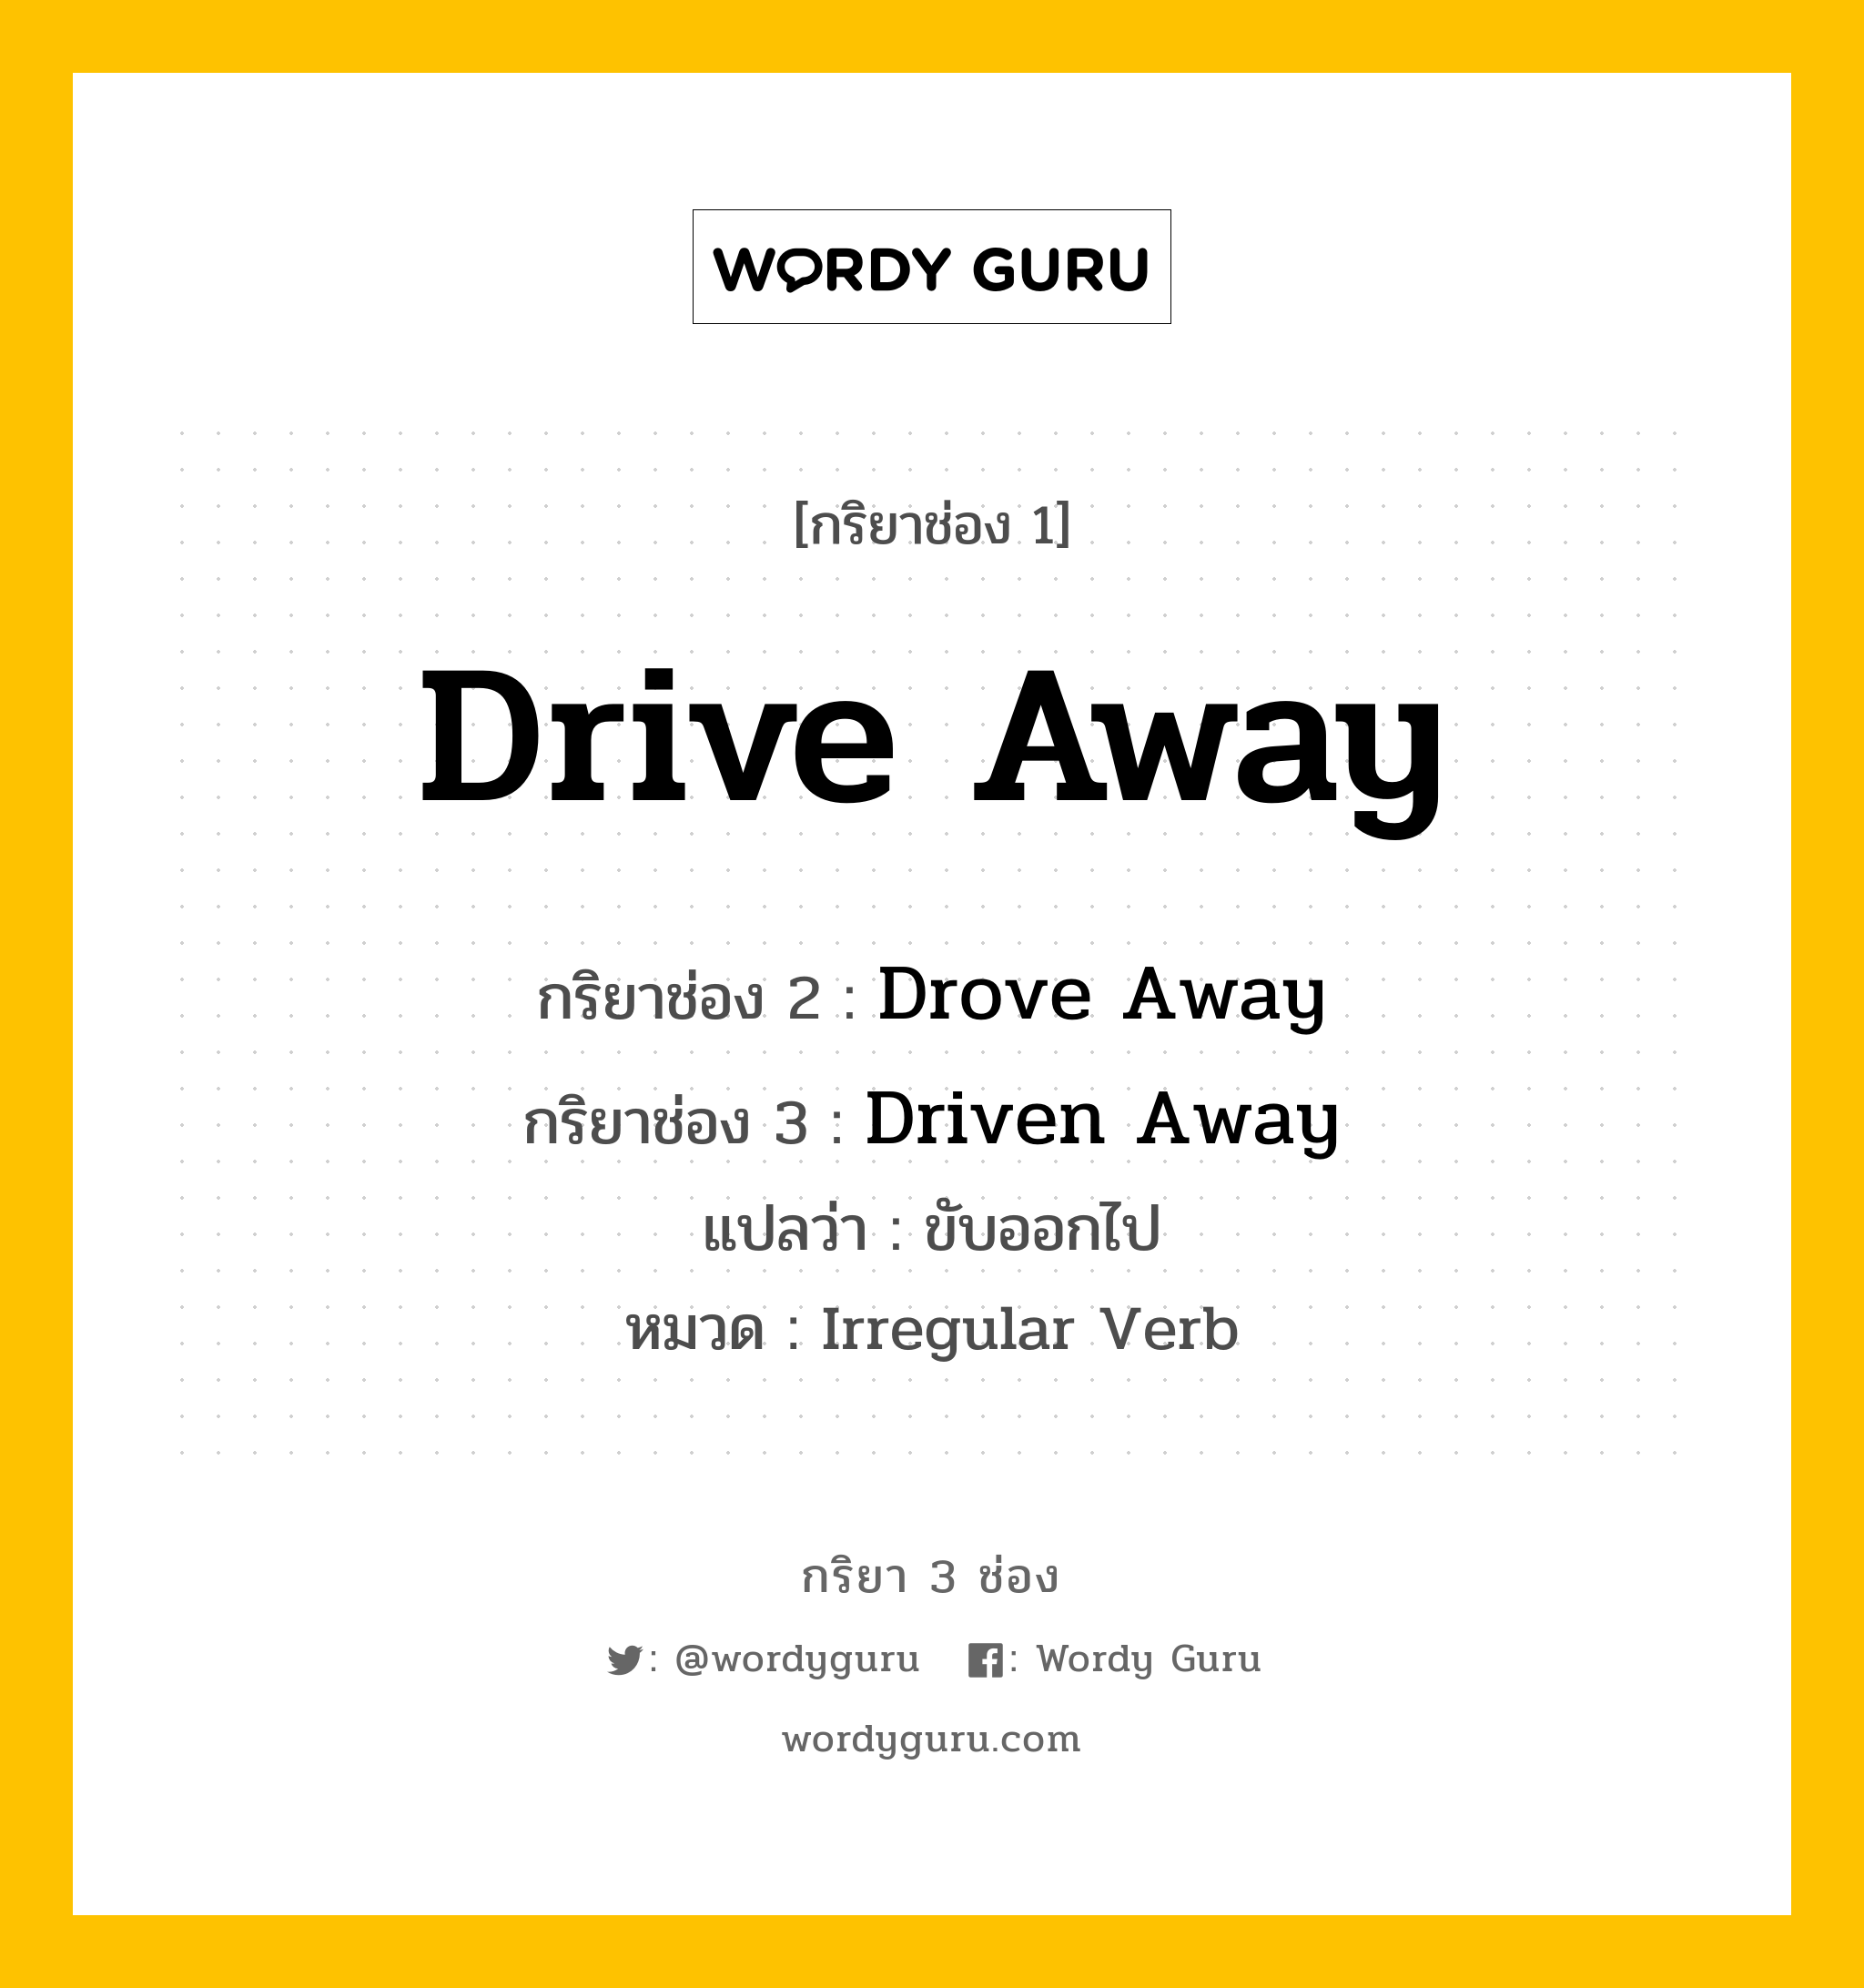 กริยา 3 ช่อง ของ Drive Away คืออะไร? มาดูคำอ่าน คำแปลกันเลย, กริยาช่อง 1 Drive Away กริยาช่อง 2 Drove Away กริยาช่อง 3 Driven Away แปลว่า ขับออกไป หมวด Irregular Verb หมวด Irregular Verb